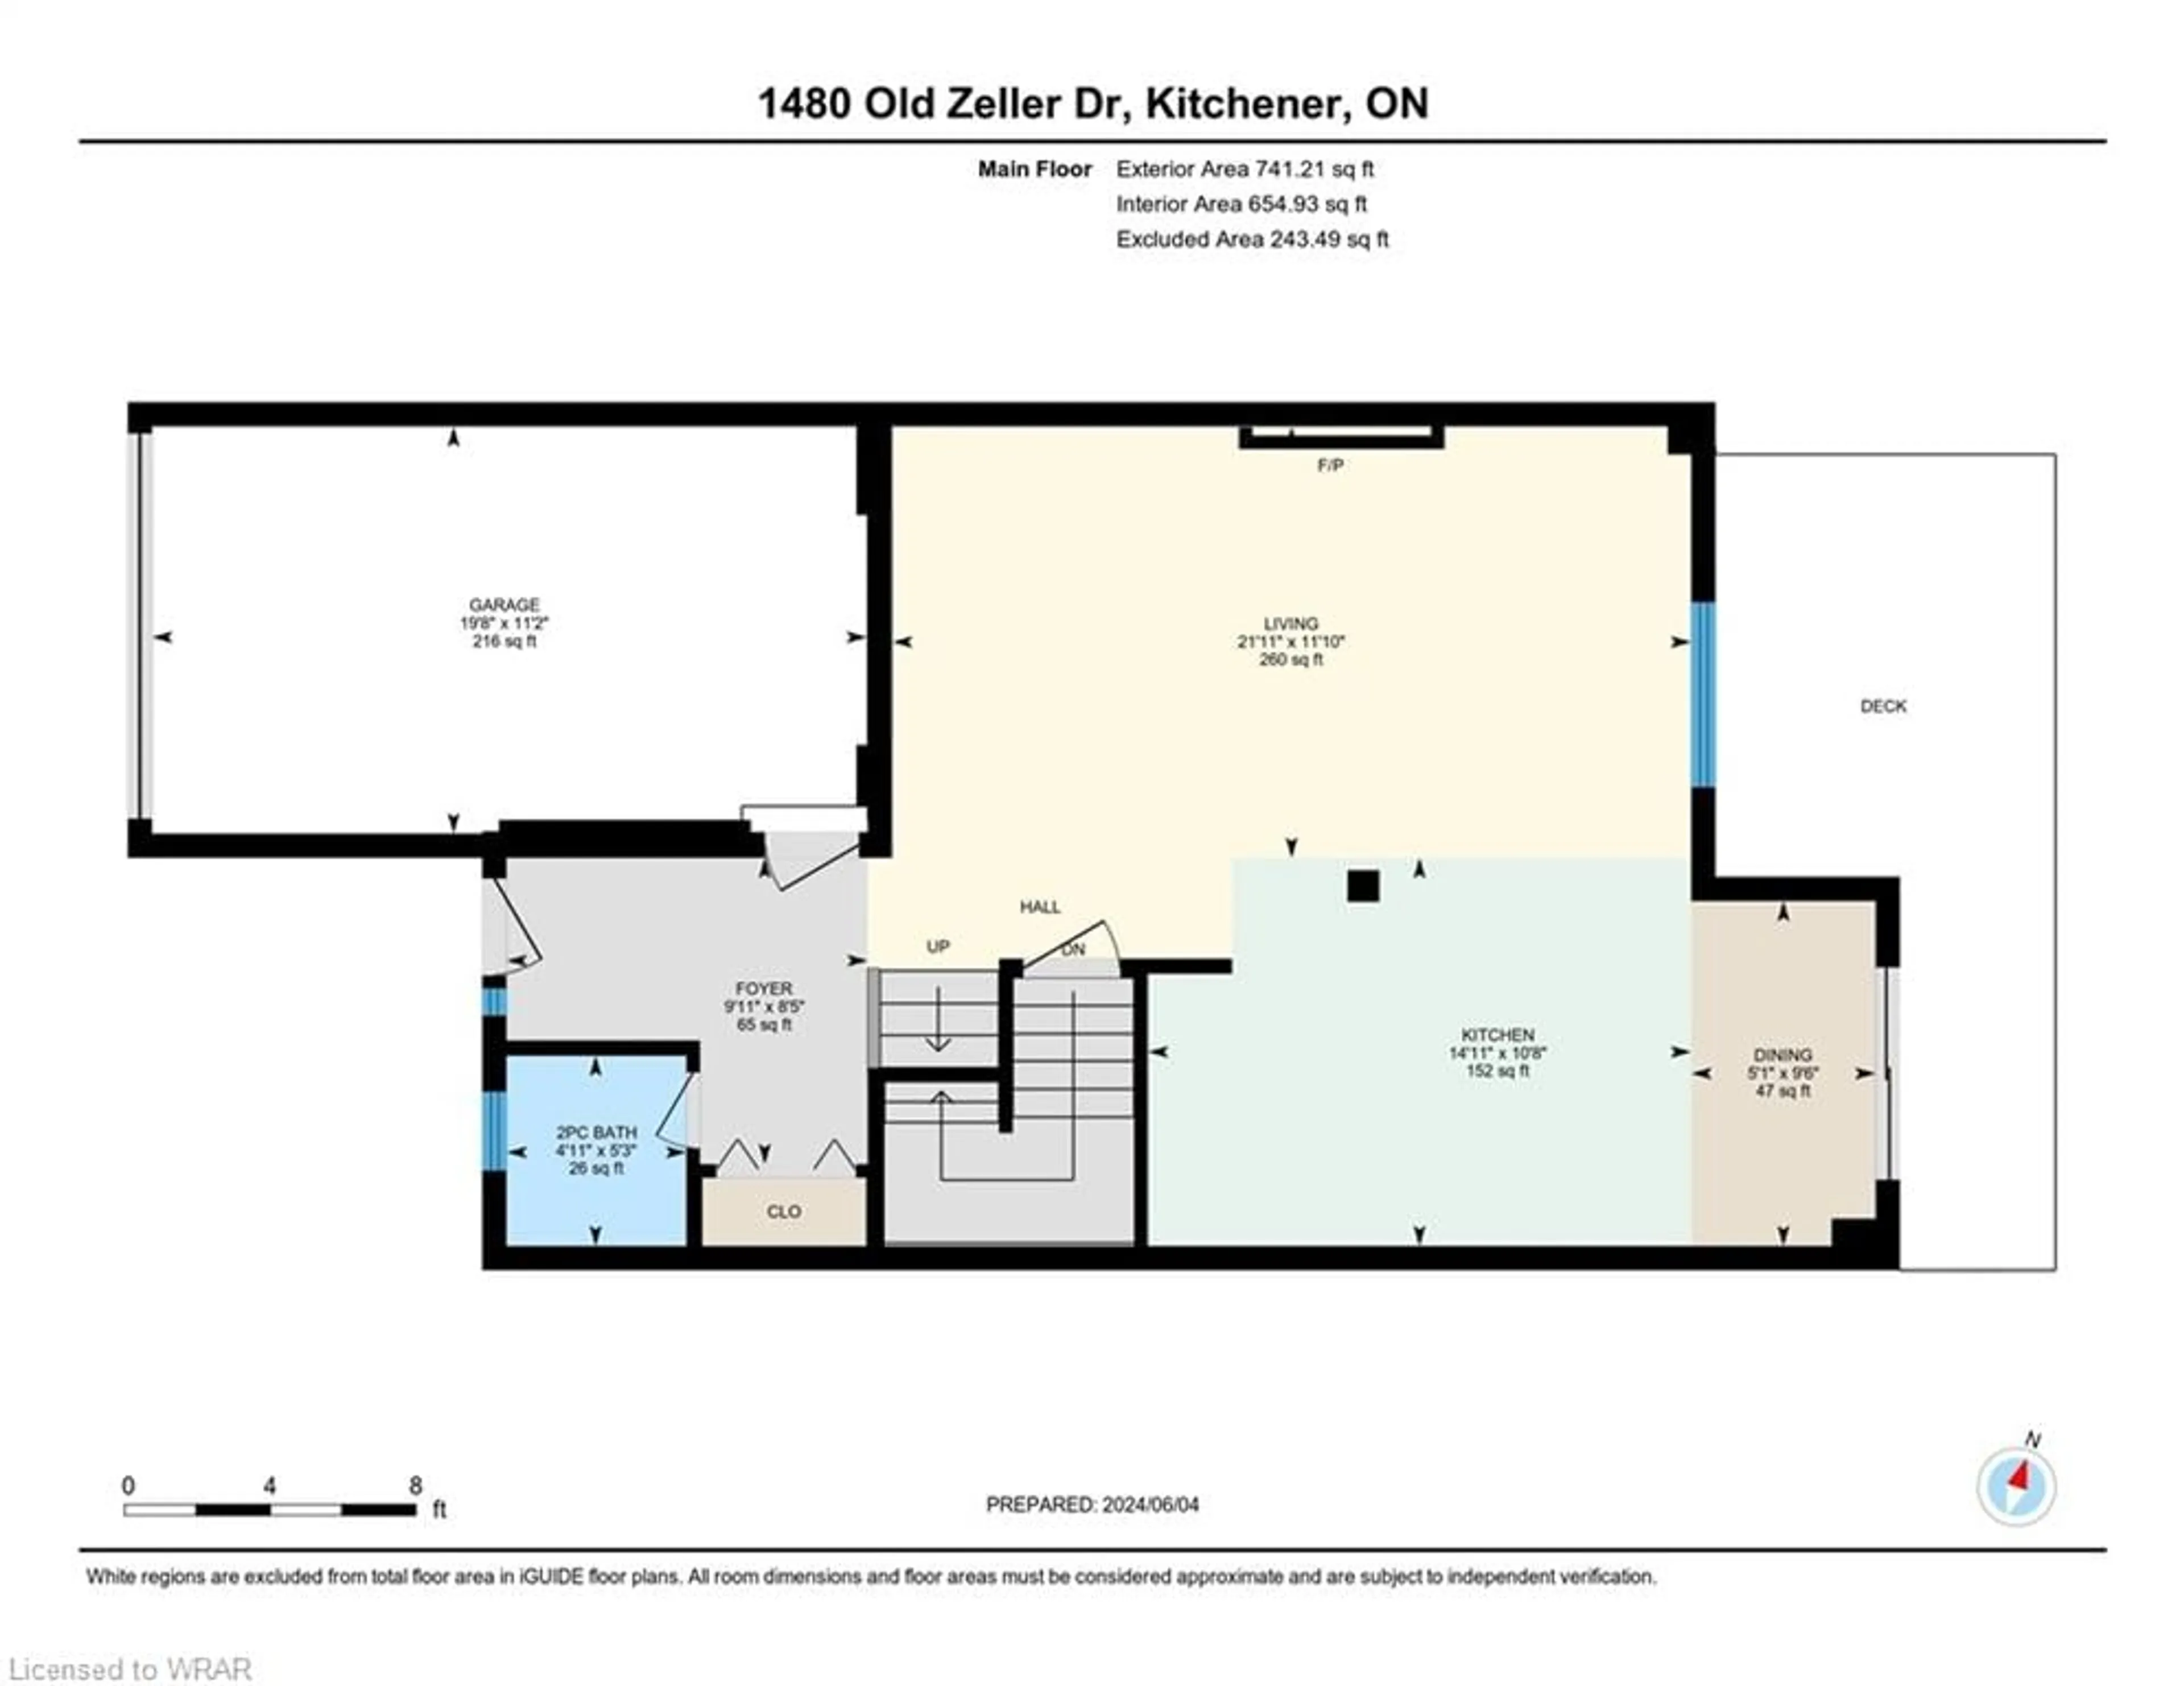 Floor plan for 1480 Old Zeller Dr, Kitchener Ontario N2A 0H3